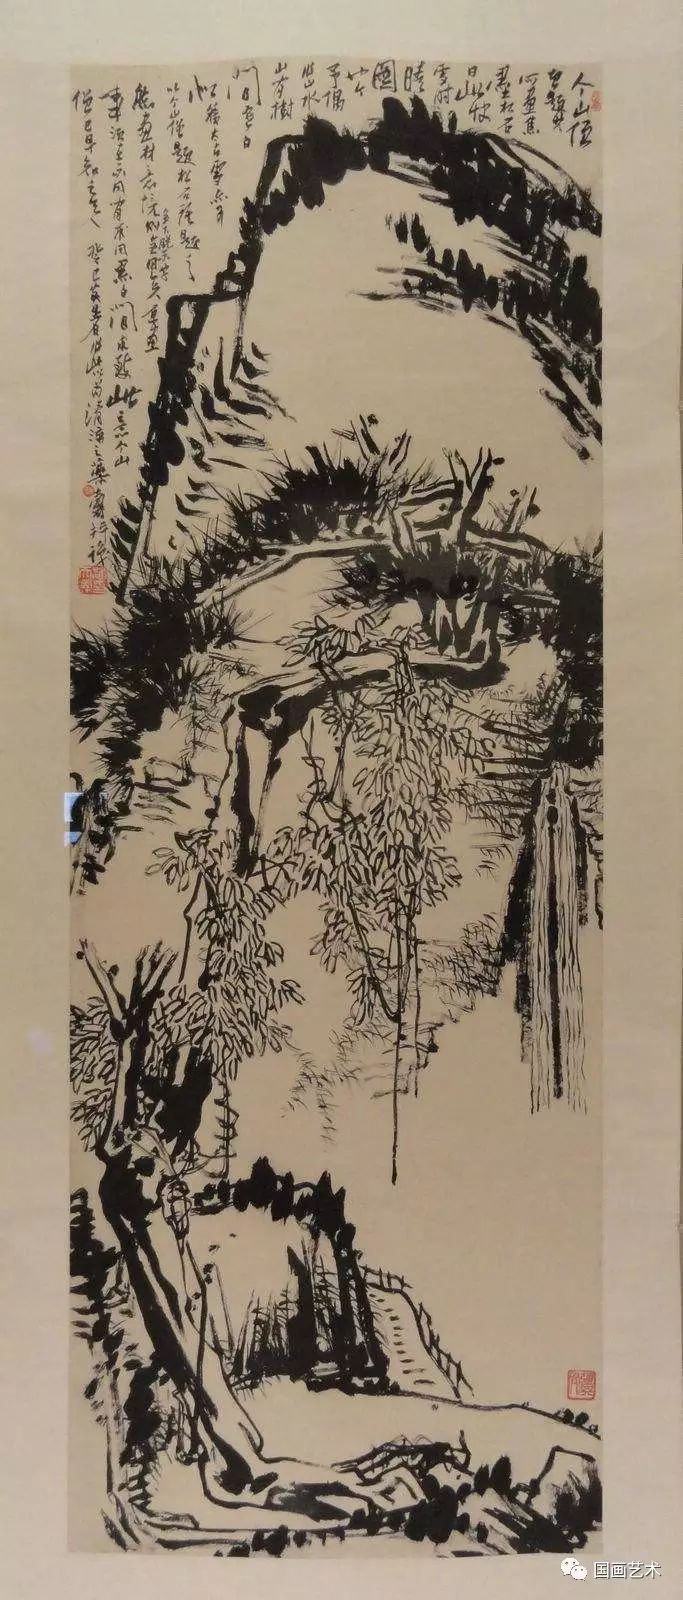 潘公凯:从潘天寿看中国画的传承与发展